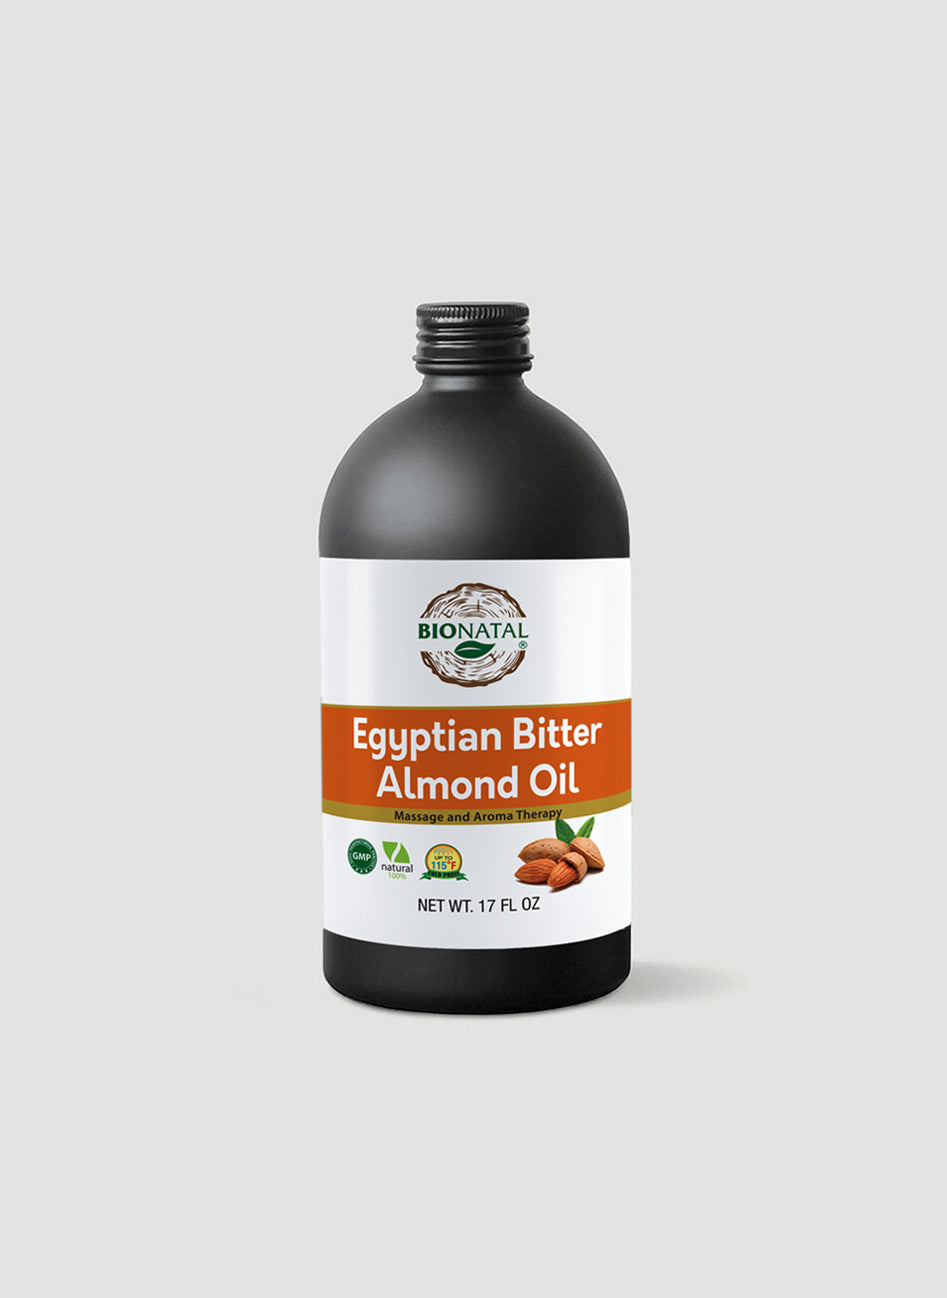 Egyptian Bitter Almond Oil